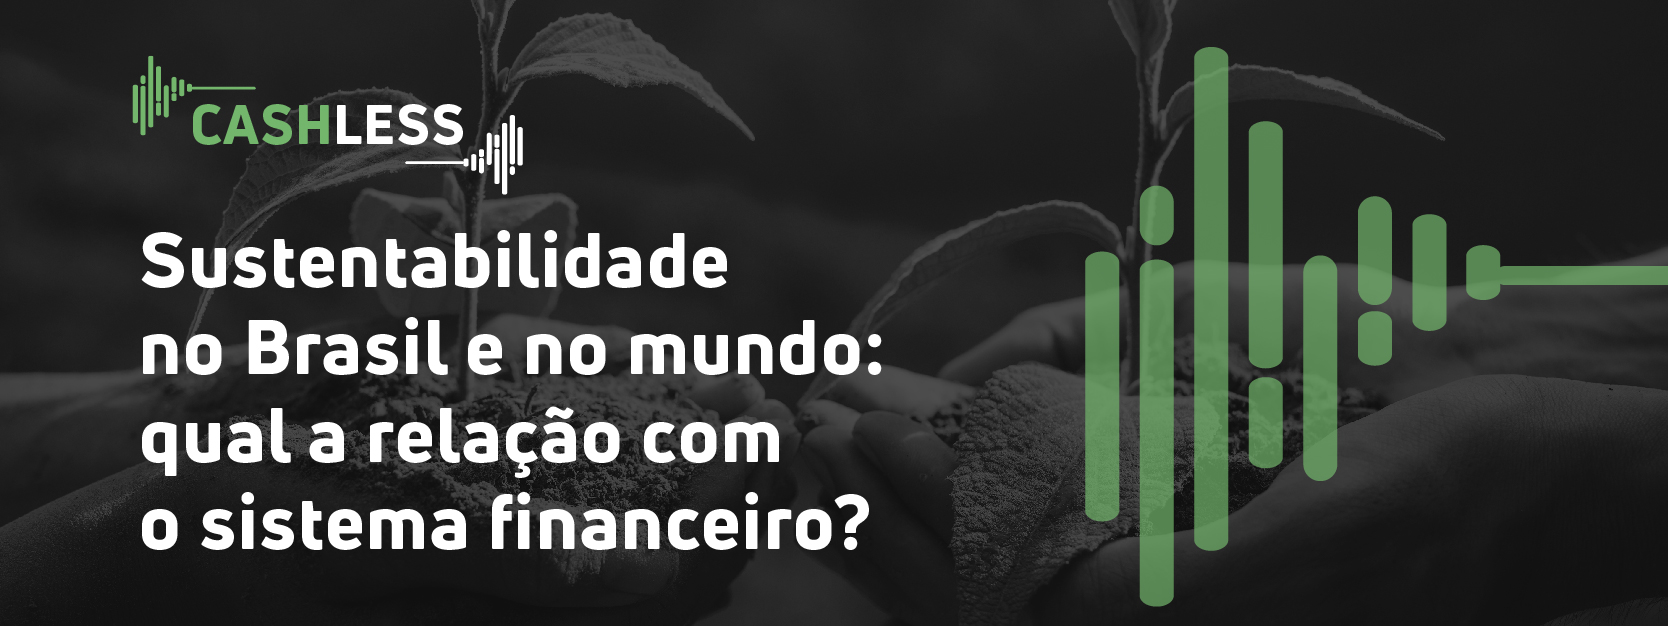 Sustentabilidade no Brasil e no mundo: qual a relação com o sistema financeiro?